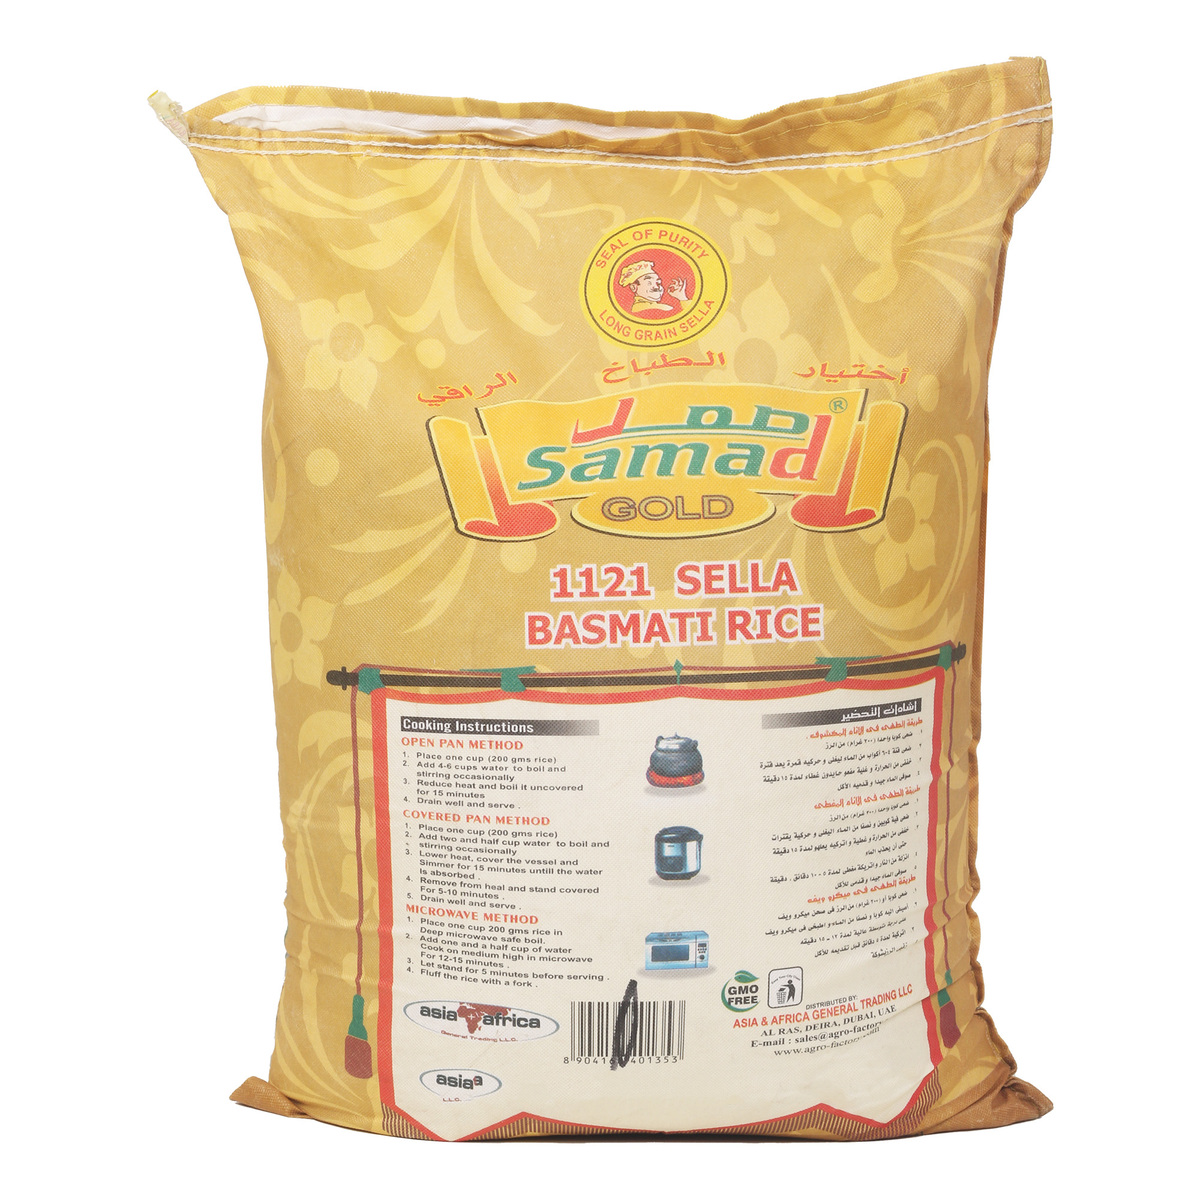 Samad Sella Basmati Rice 1121 20 kg